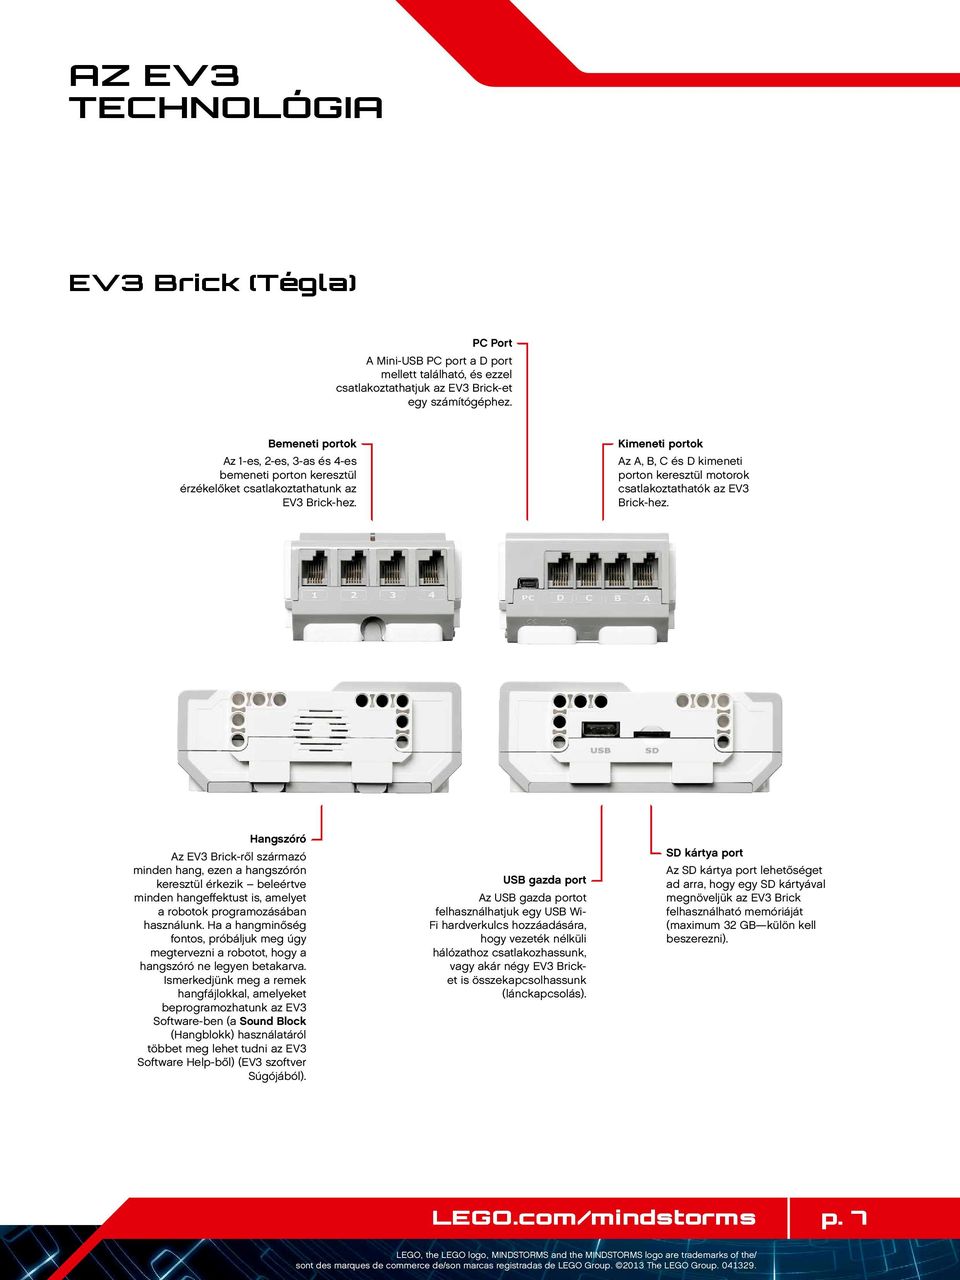 Kimeneti portok Az A, B, C és D kimeneti porton keresztül motorok csatlakoztathatók az EV3 Brick-hez.